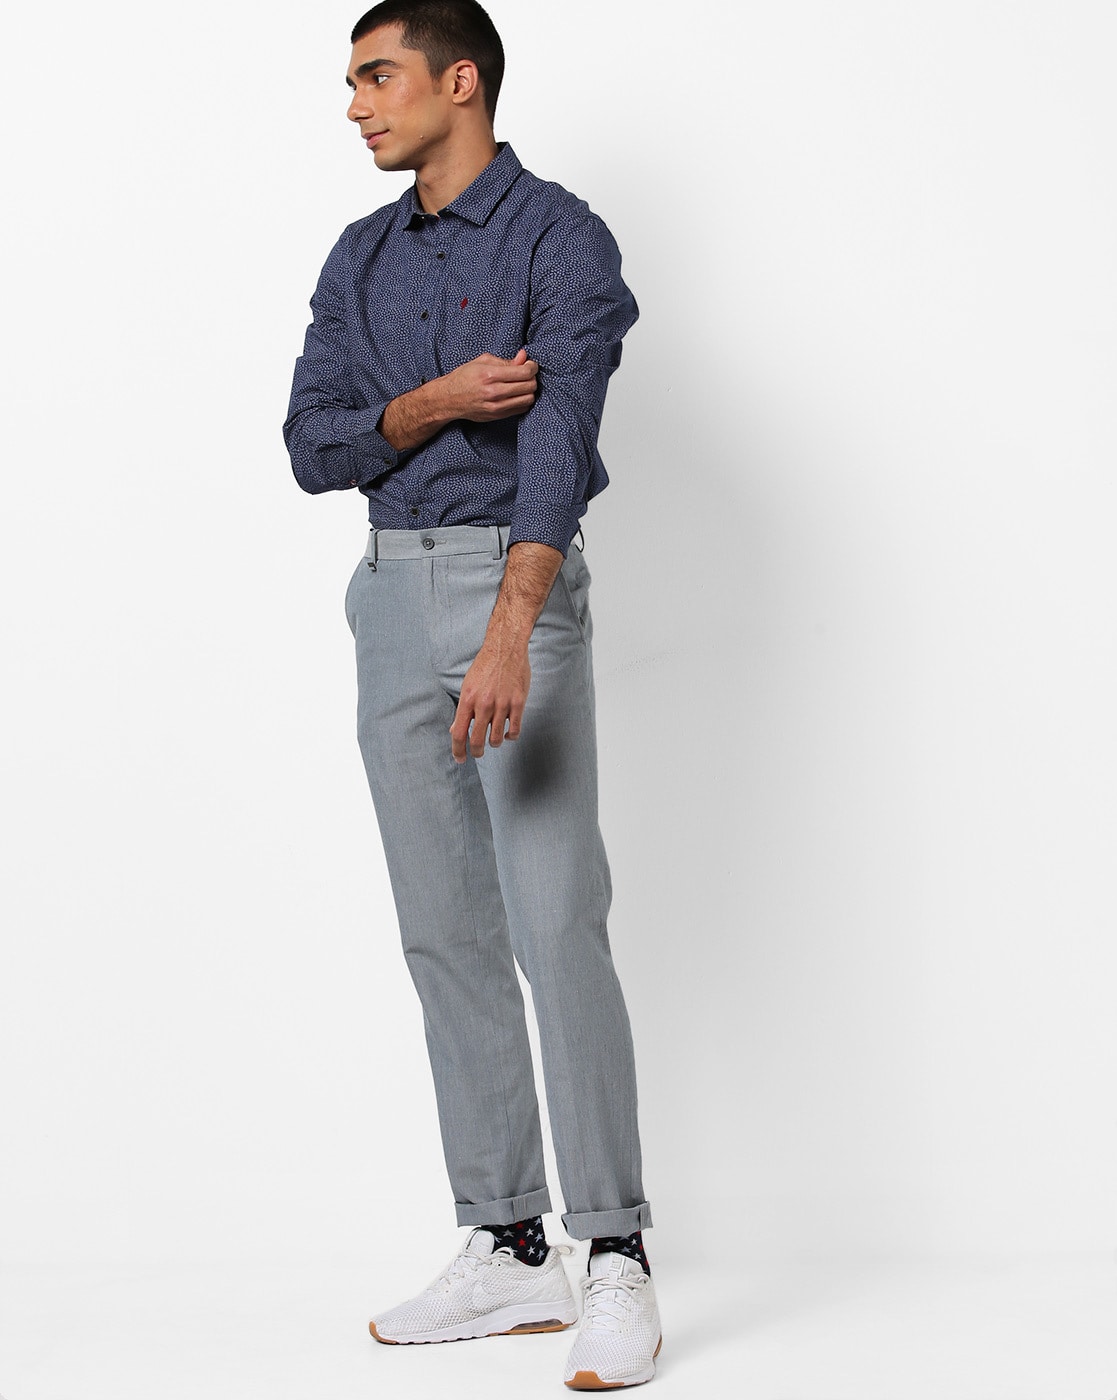 Buy KUNDAN SULZ GWALIOR Men's Cotton Shirt & Trouser Fabric Combo Set (Steel  Grey & Beige) at Amazon.in